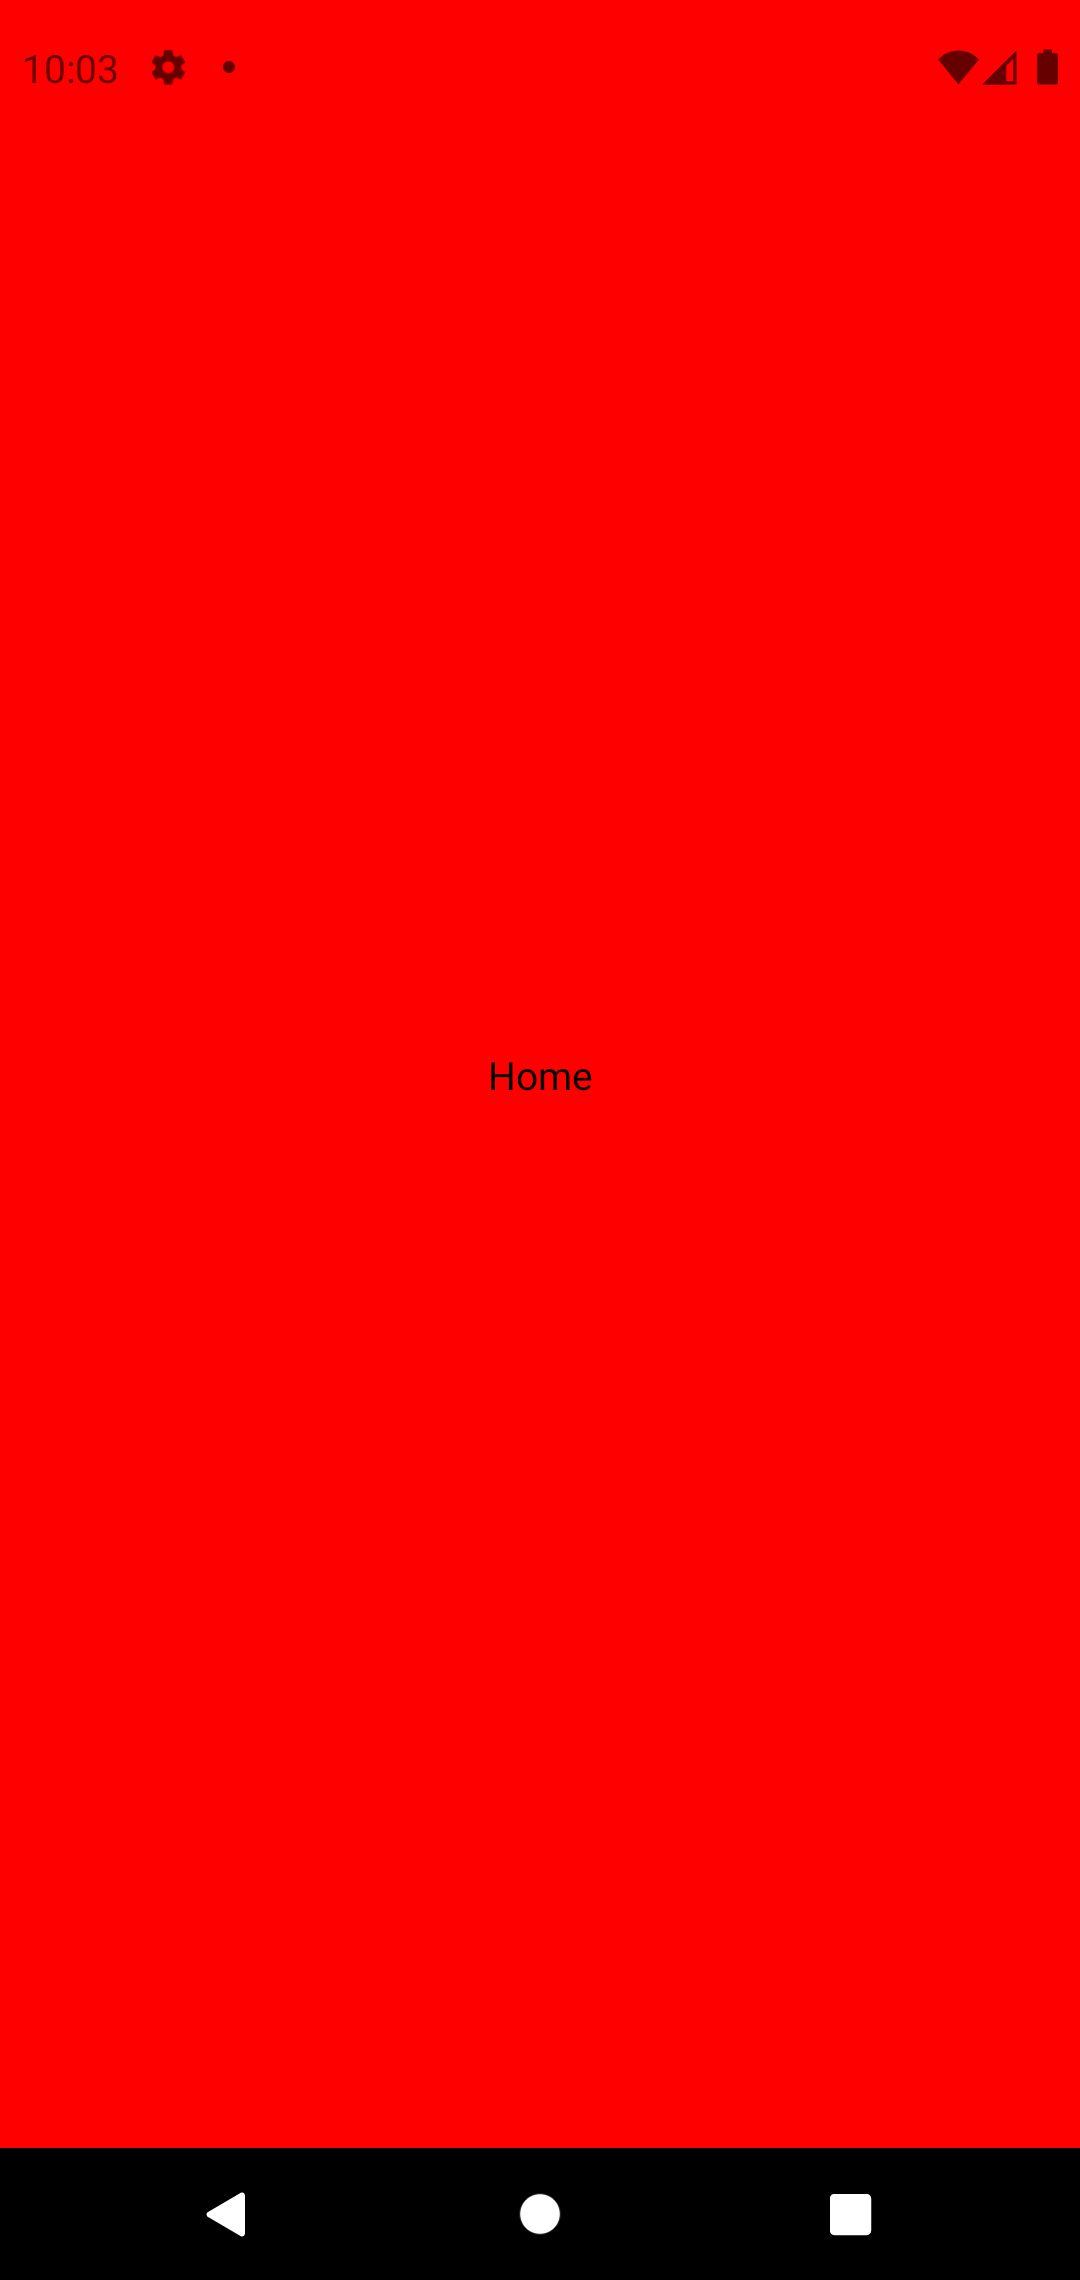 Captura de Android simulator con fondo rojo y la palabra Home escrita en el centro.